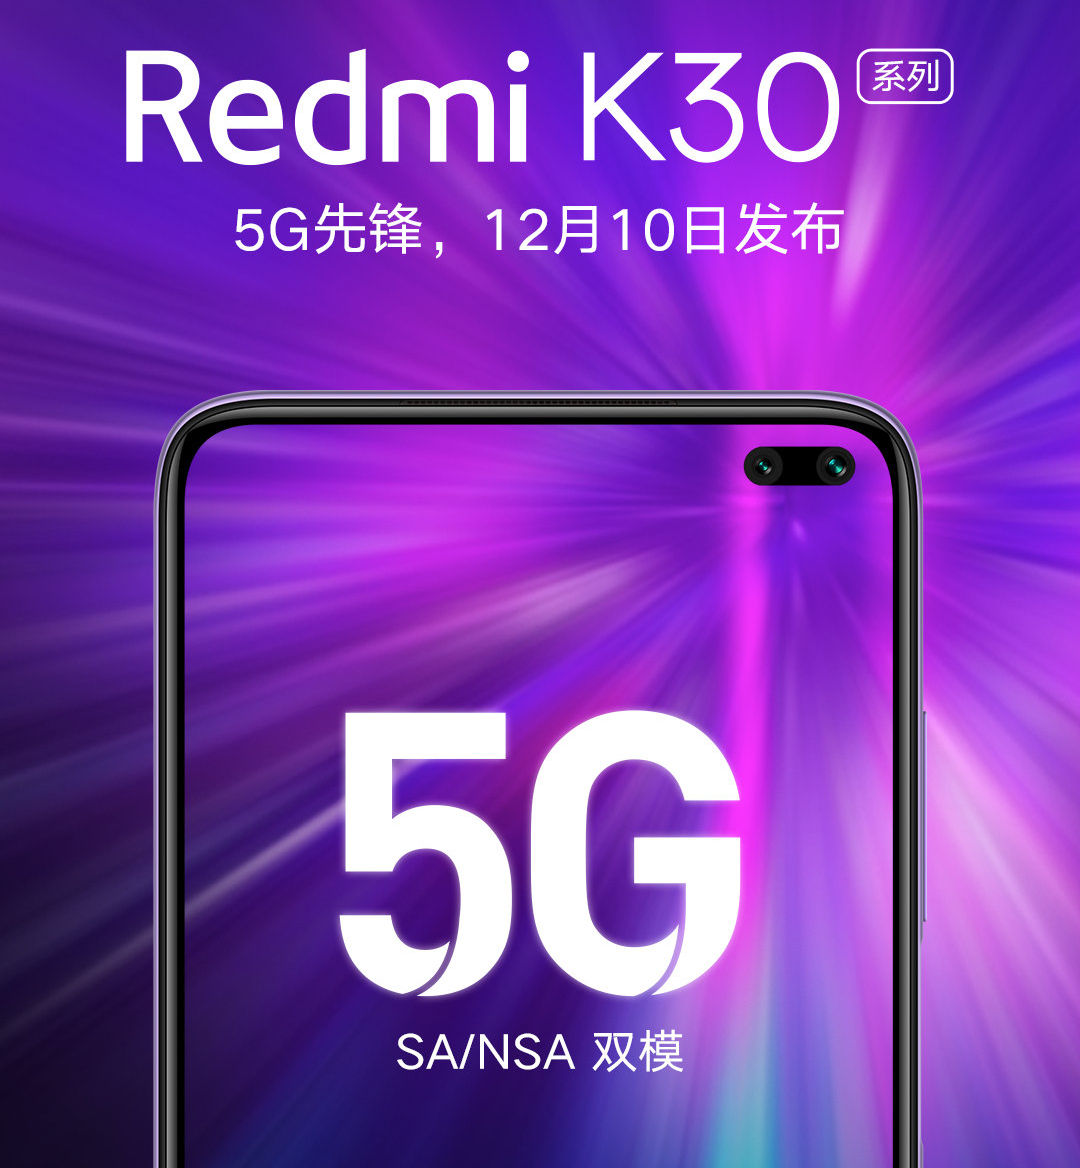 Xiaomi svelerà Redmi K30 il prossimo 10 dicembre, confermati il supporto 5G e il foro nel display (foto)